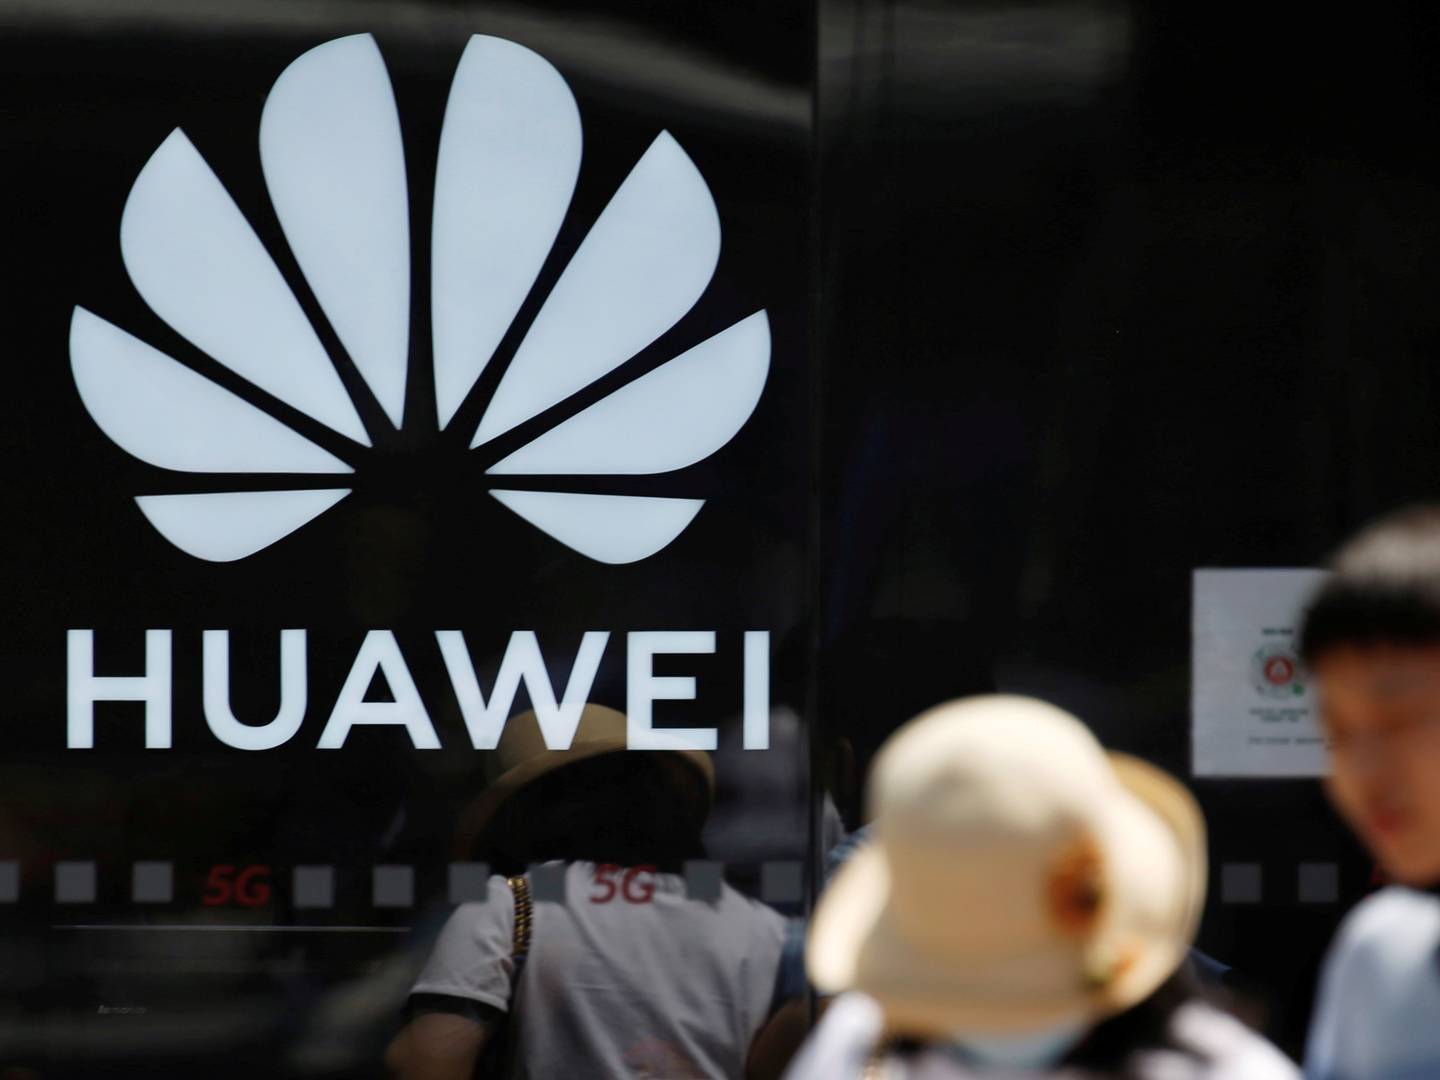 Pres fra USA har fået en række allierede nationer til at forbyde eller begrænse brugen af Huawei-udstyr i forbindelse med udrulningen af 5G-netværket. | Foto: TINGSHU WANG/REUTERS / X06979